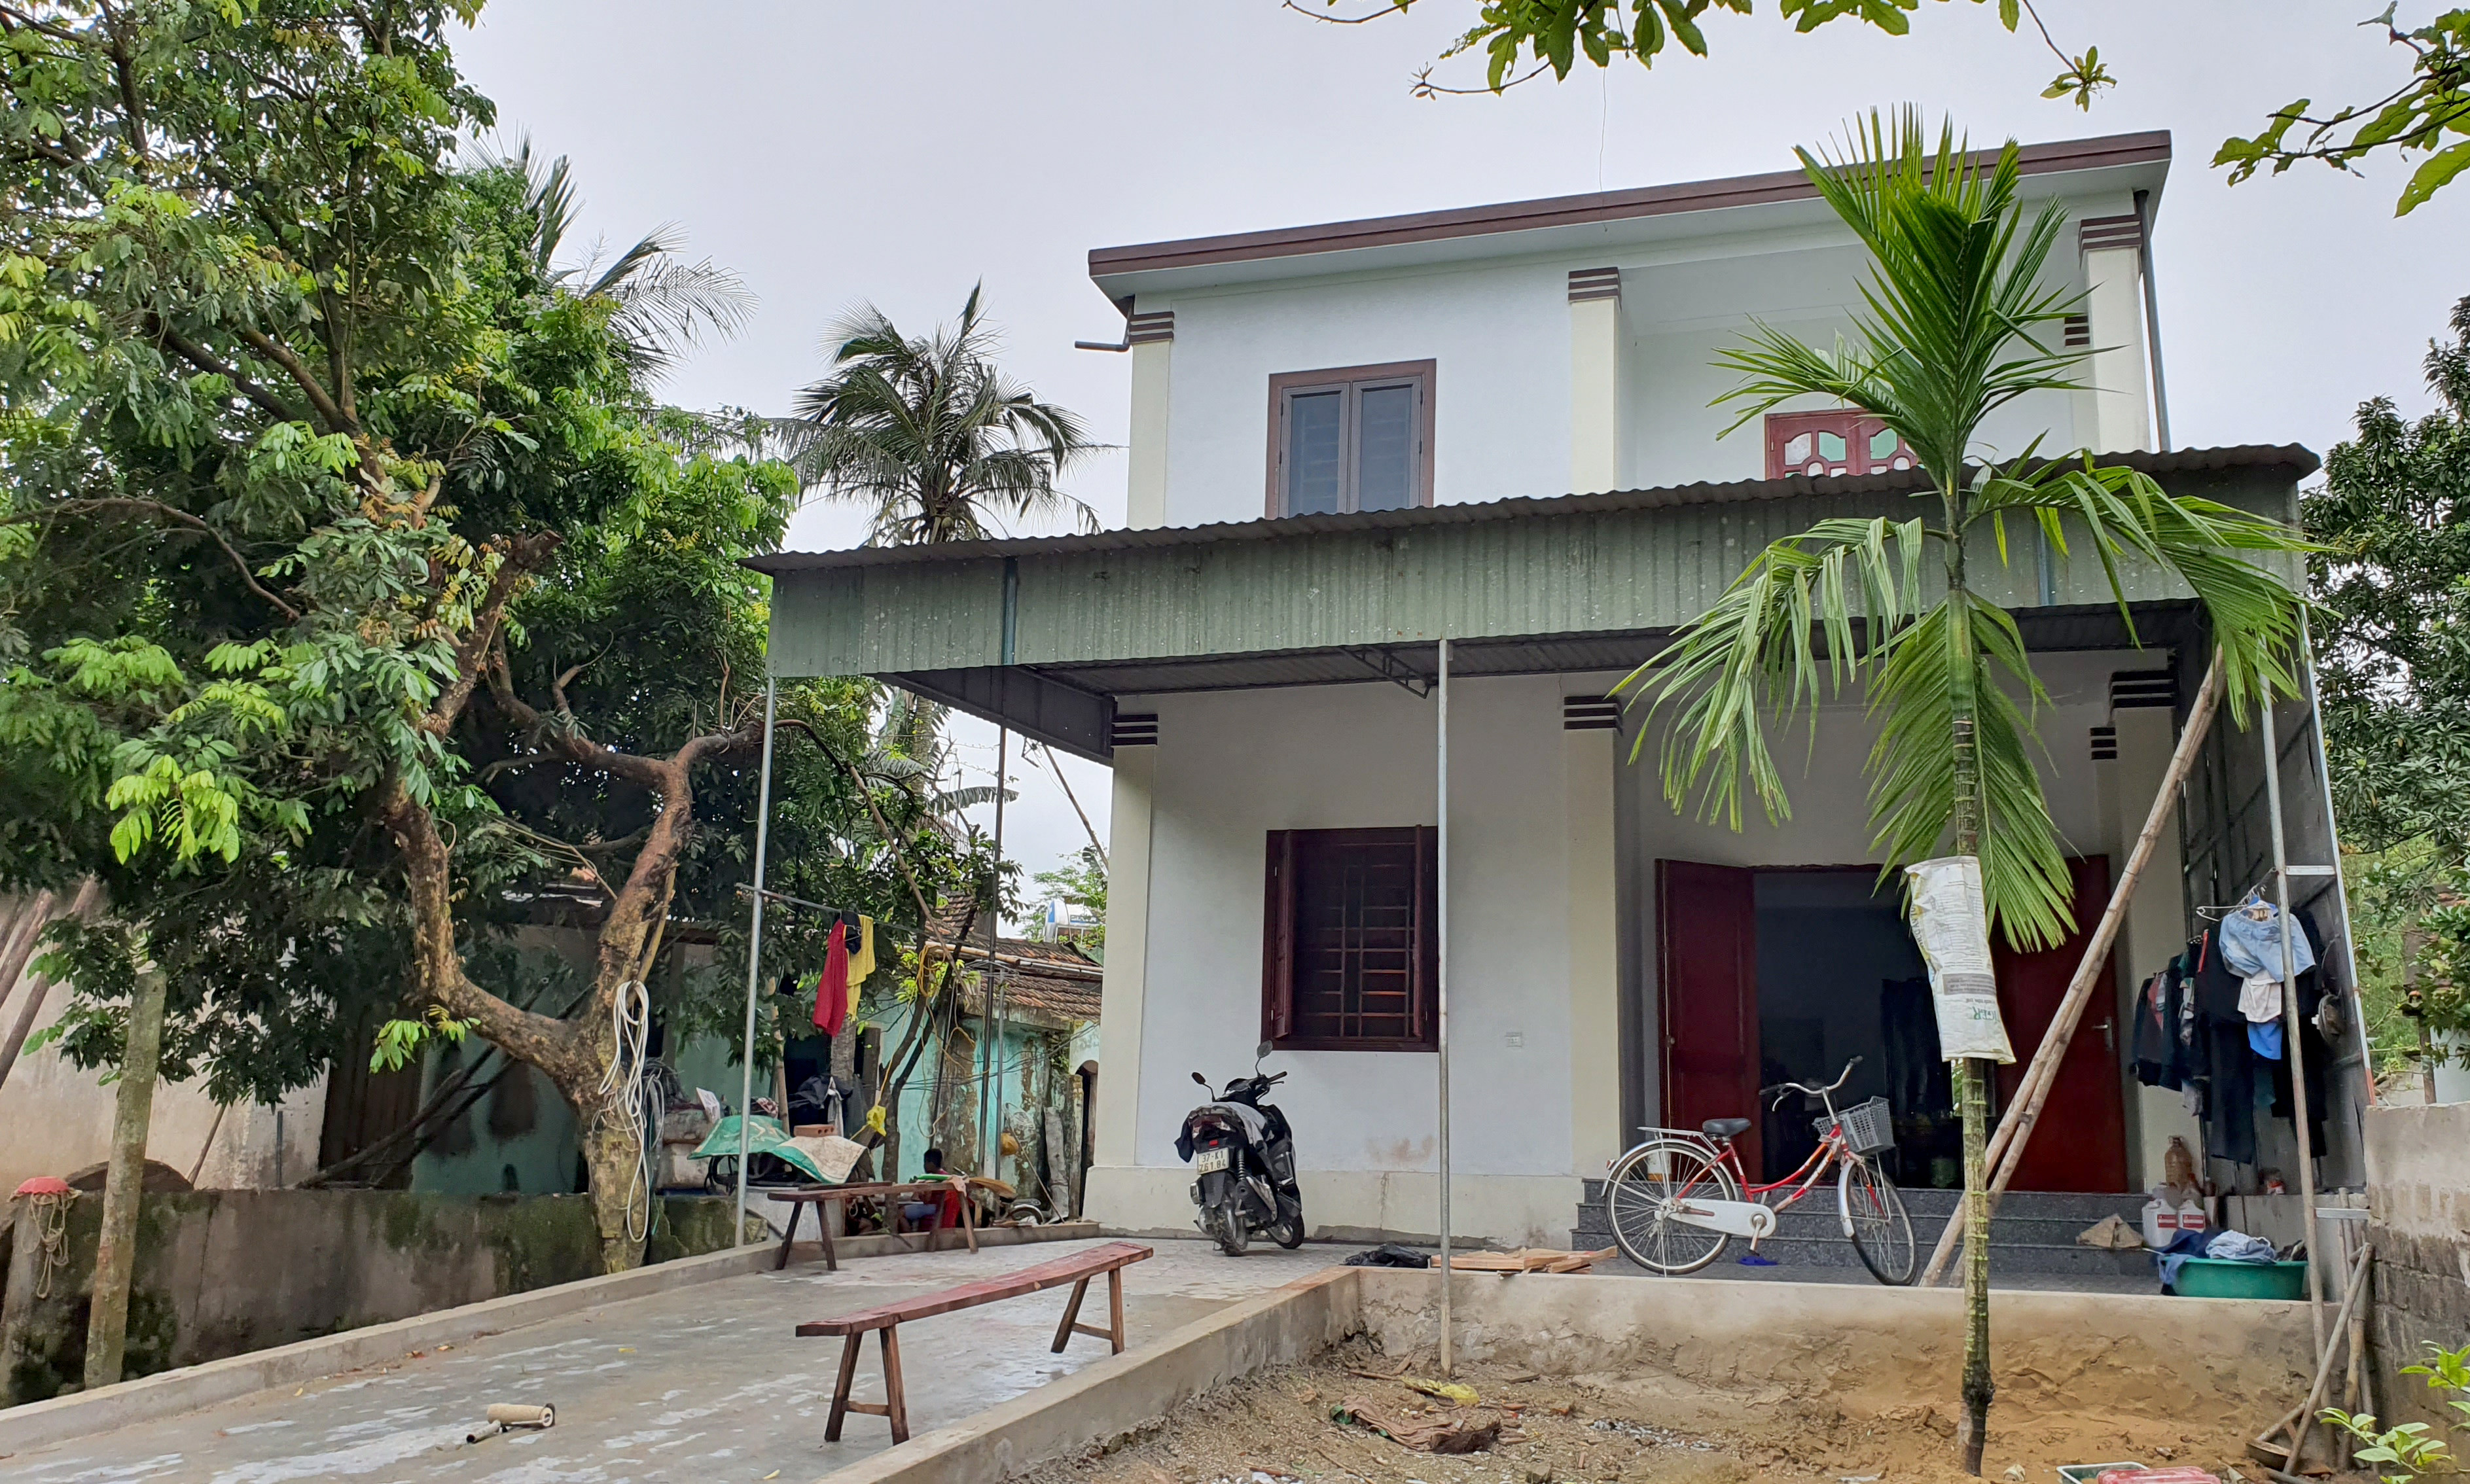 Gia đình ông Nguyễn Kế Thọ làm liều xây dựng căn nhà 2 gác khi căn nhà cũ đã hư hỏng nặng. Ảnh: P.B